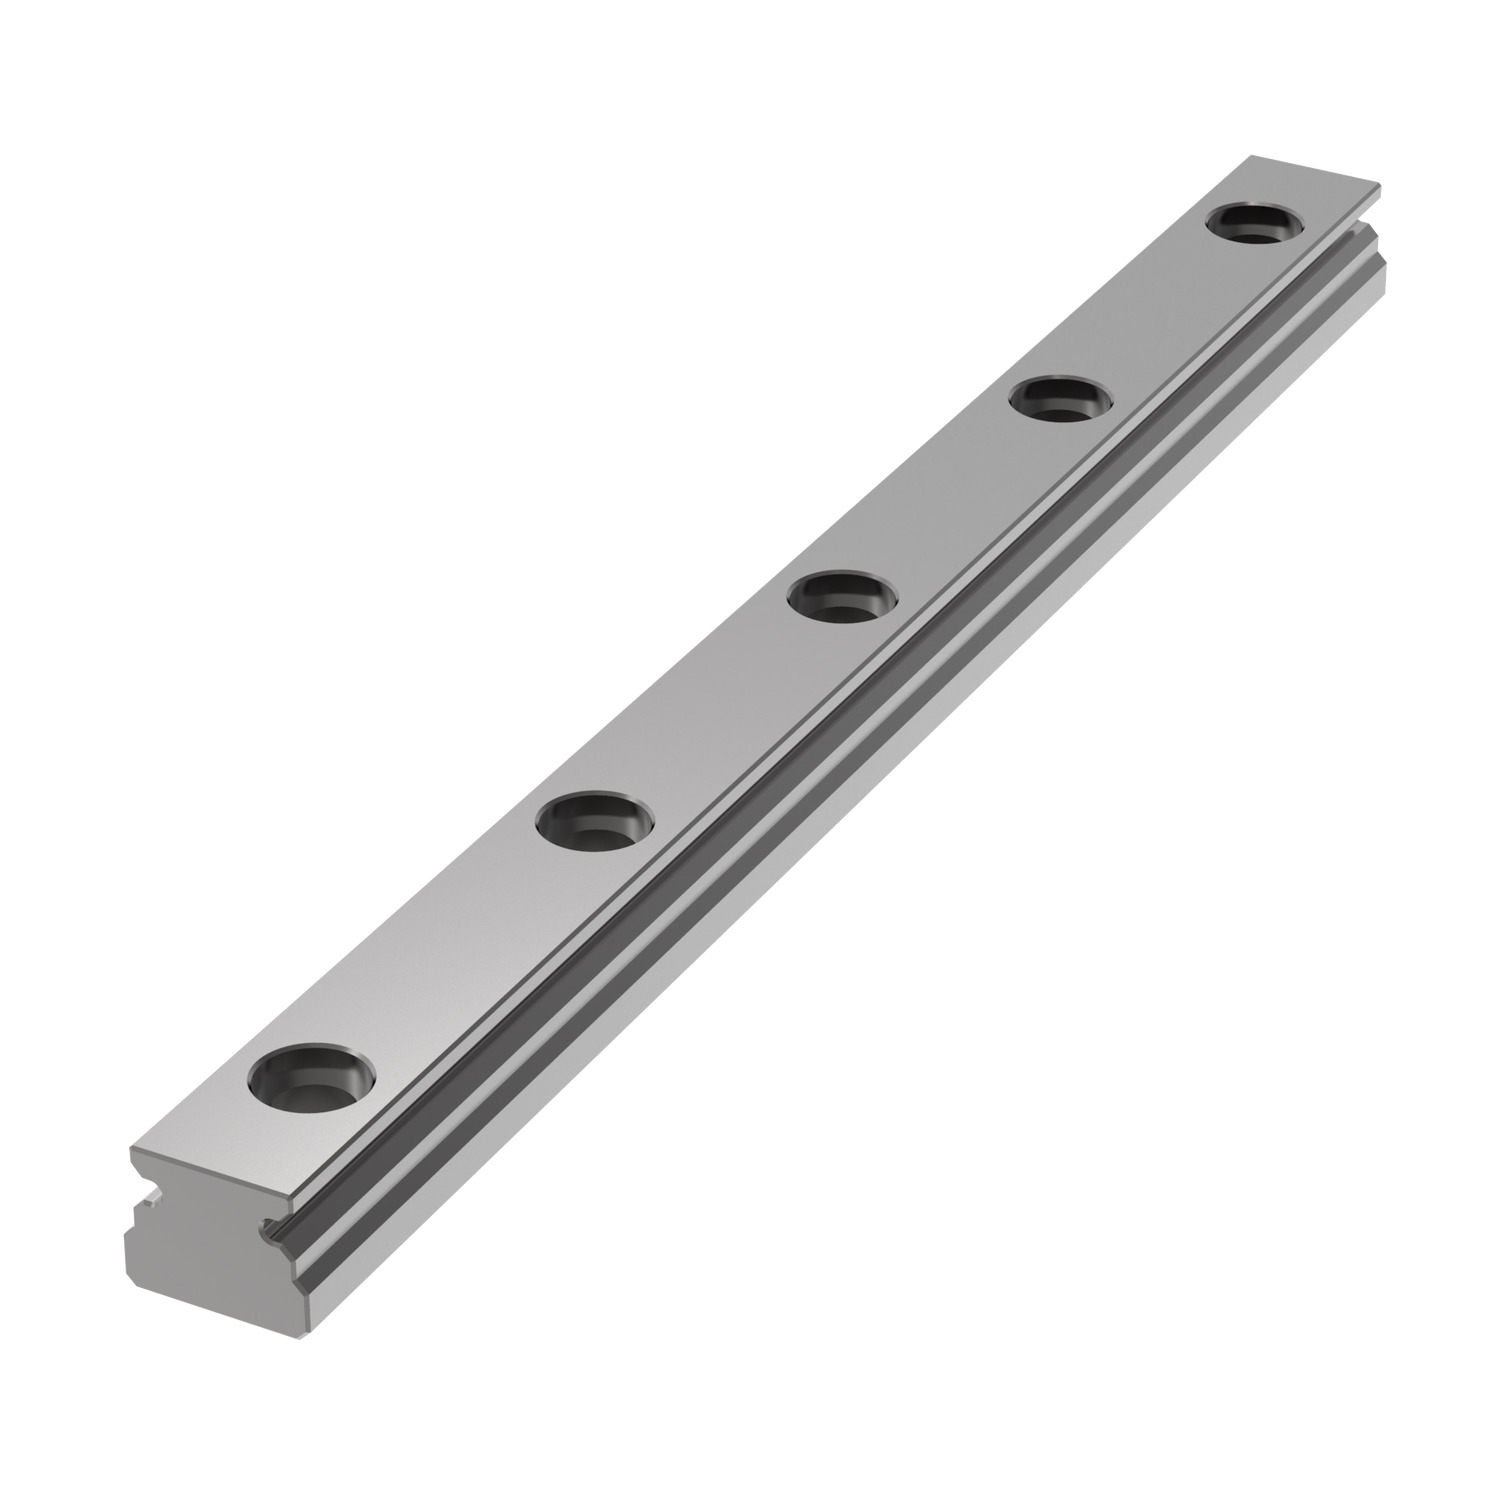 L1010.03 - 3mm Miniature Linear Rail